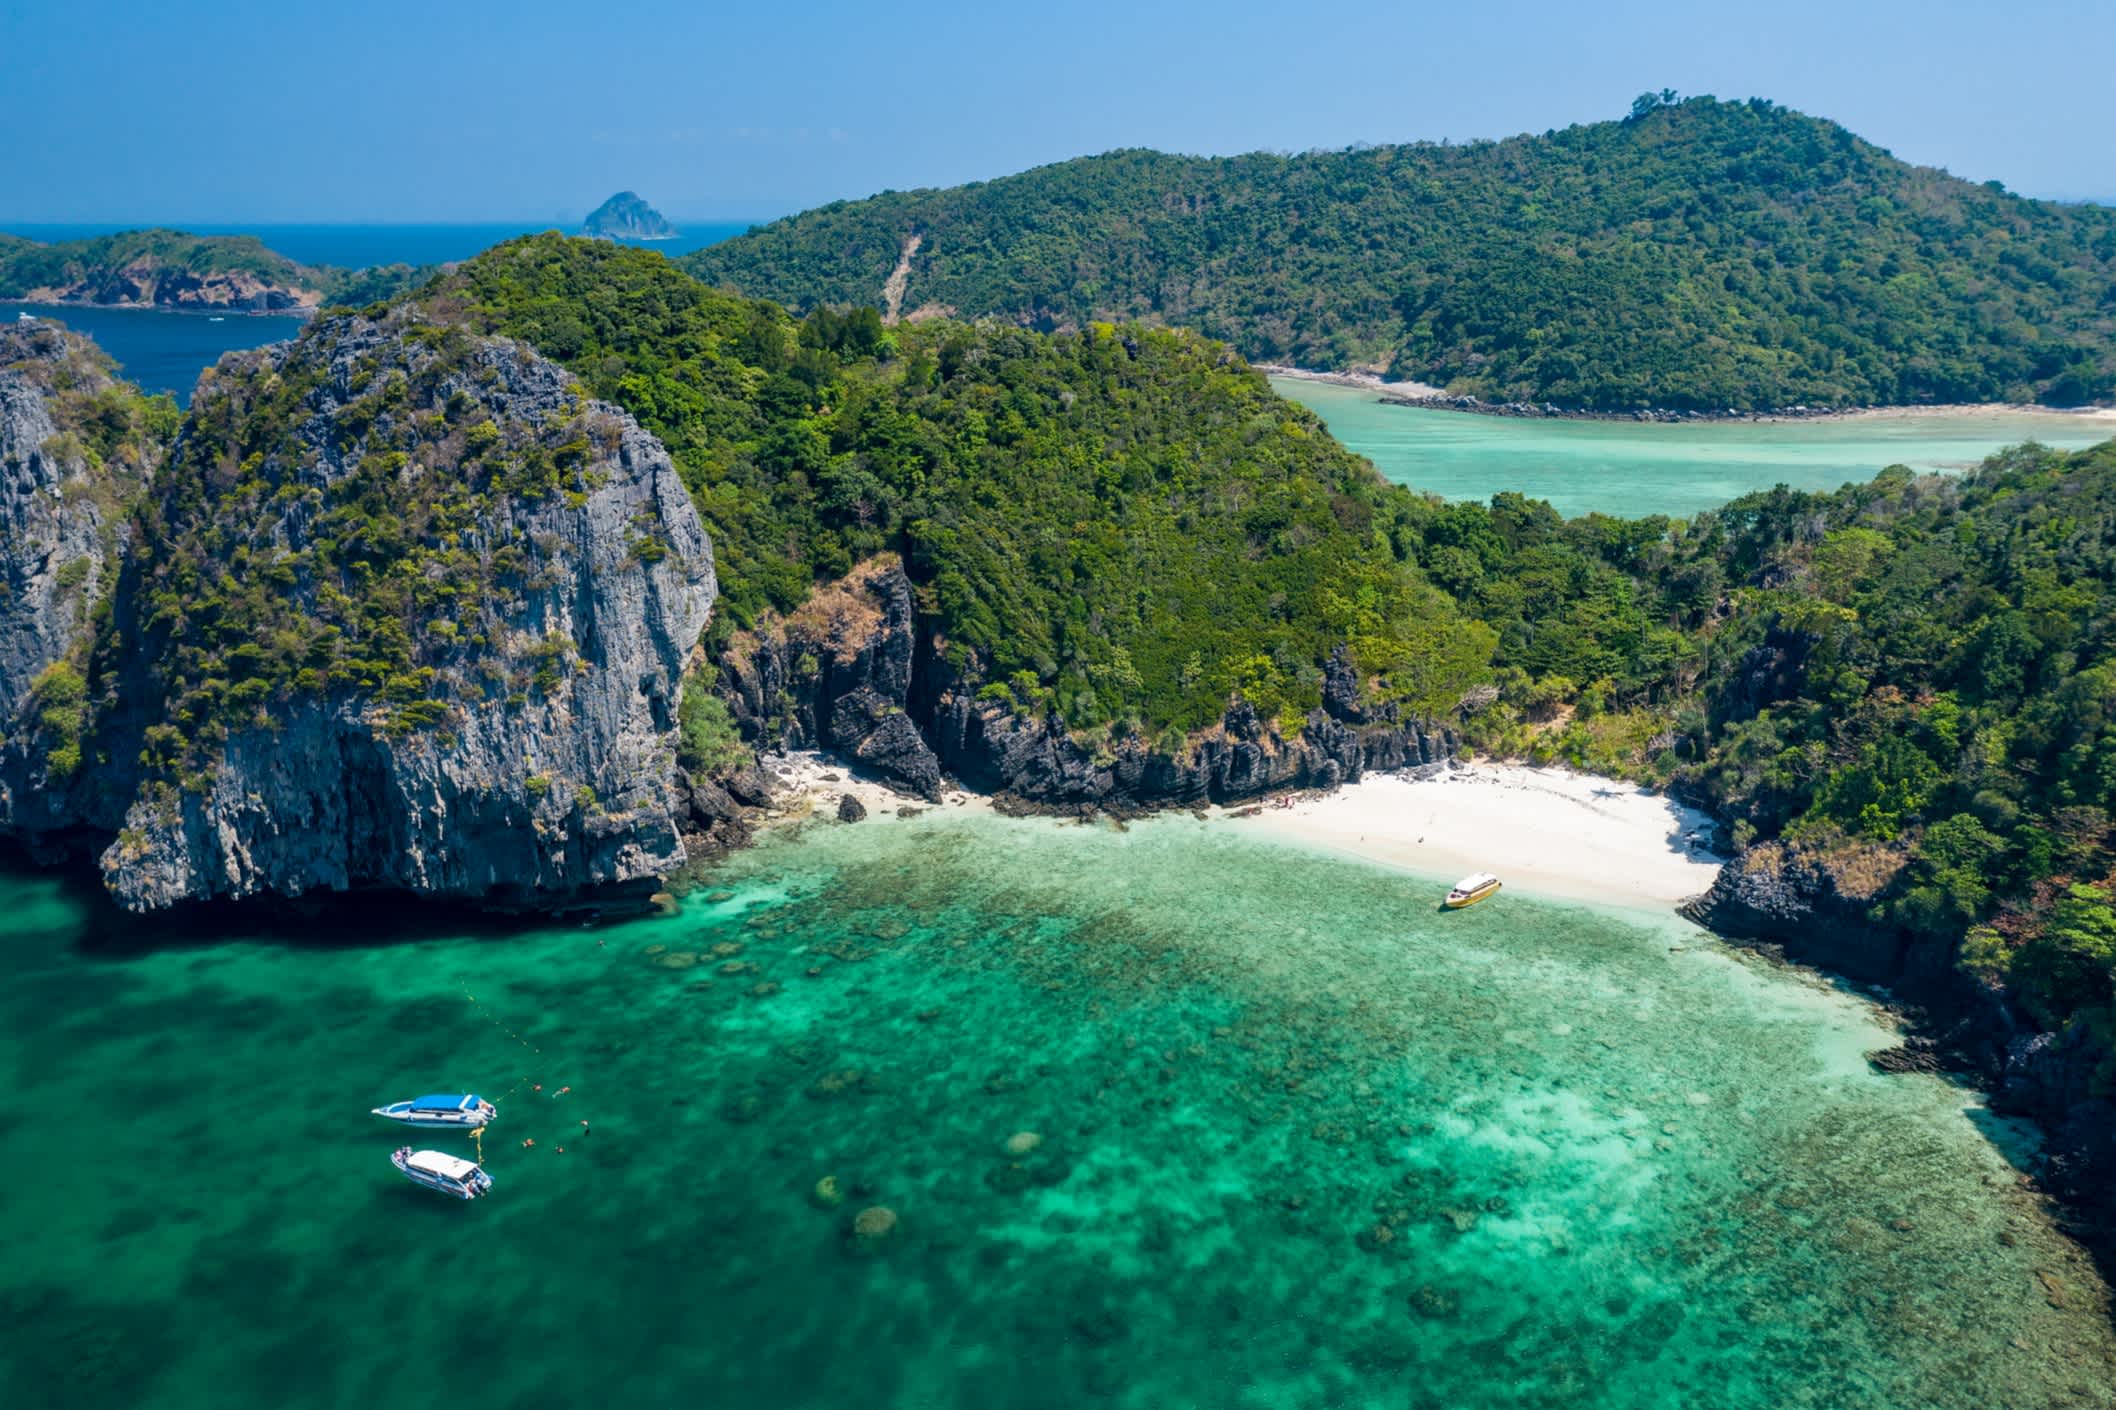 Nui Beach liegt in einer kleinen Bucht südlich der Lana Bay an der Westküste von Koh Phi Phi Don. Es befindet sich in Krabi, Thailand.